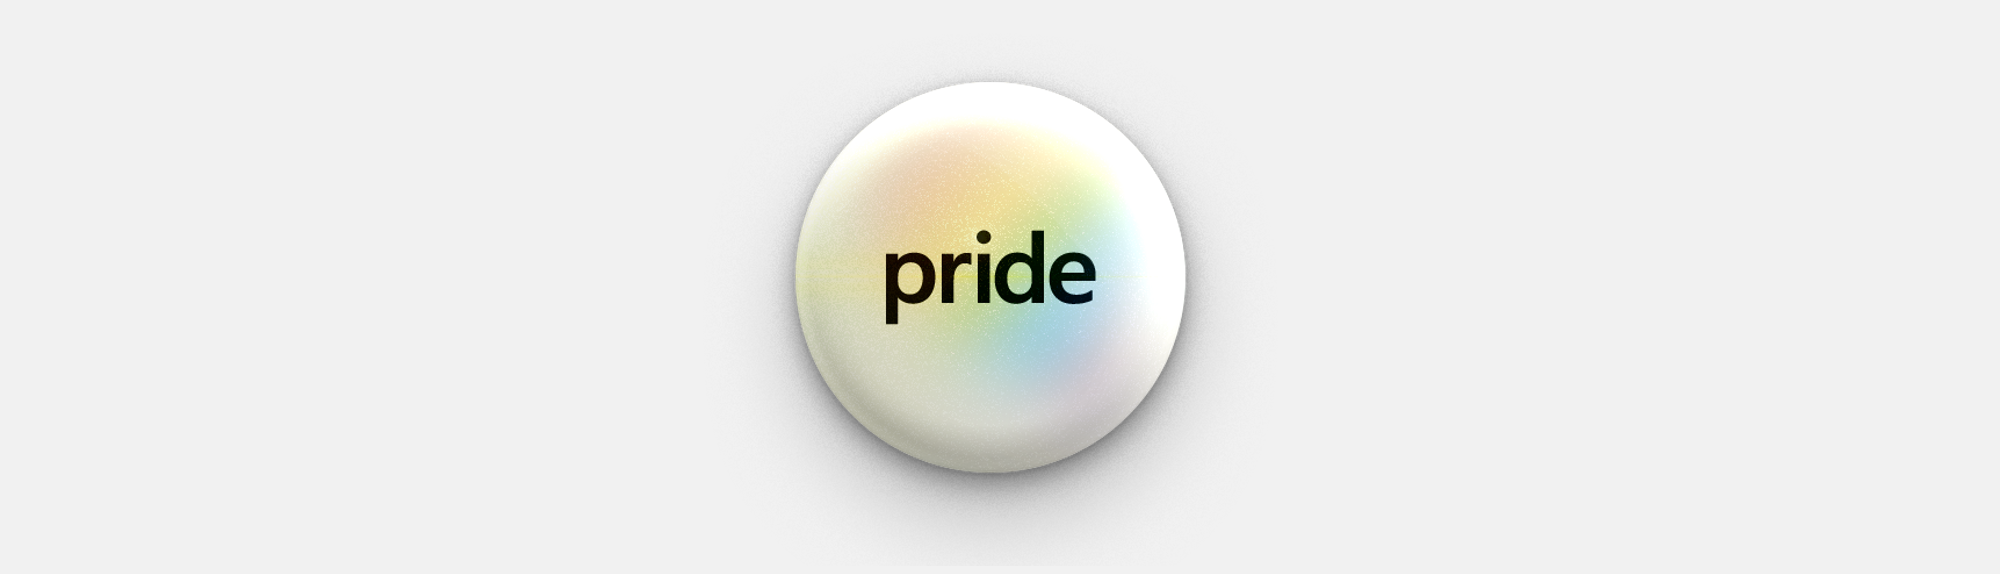 Imagem do botão Pride.